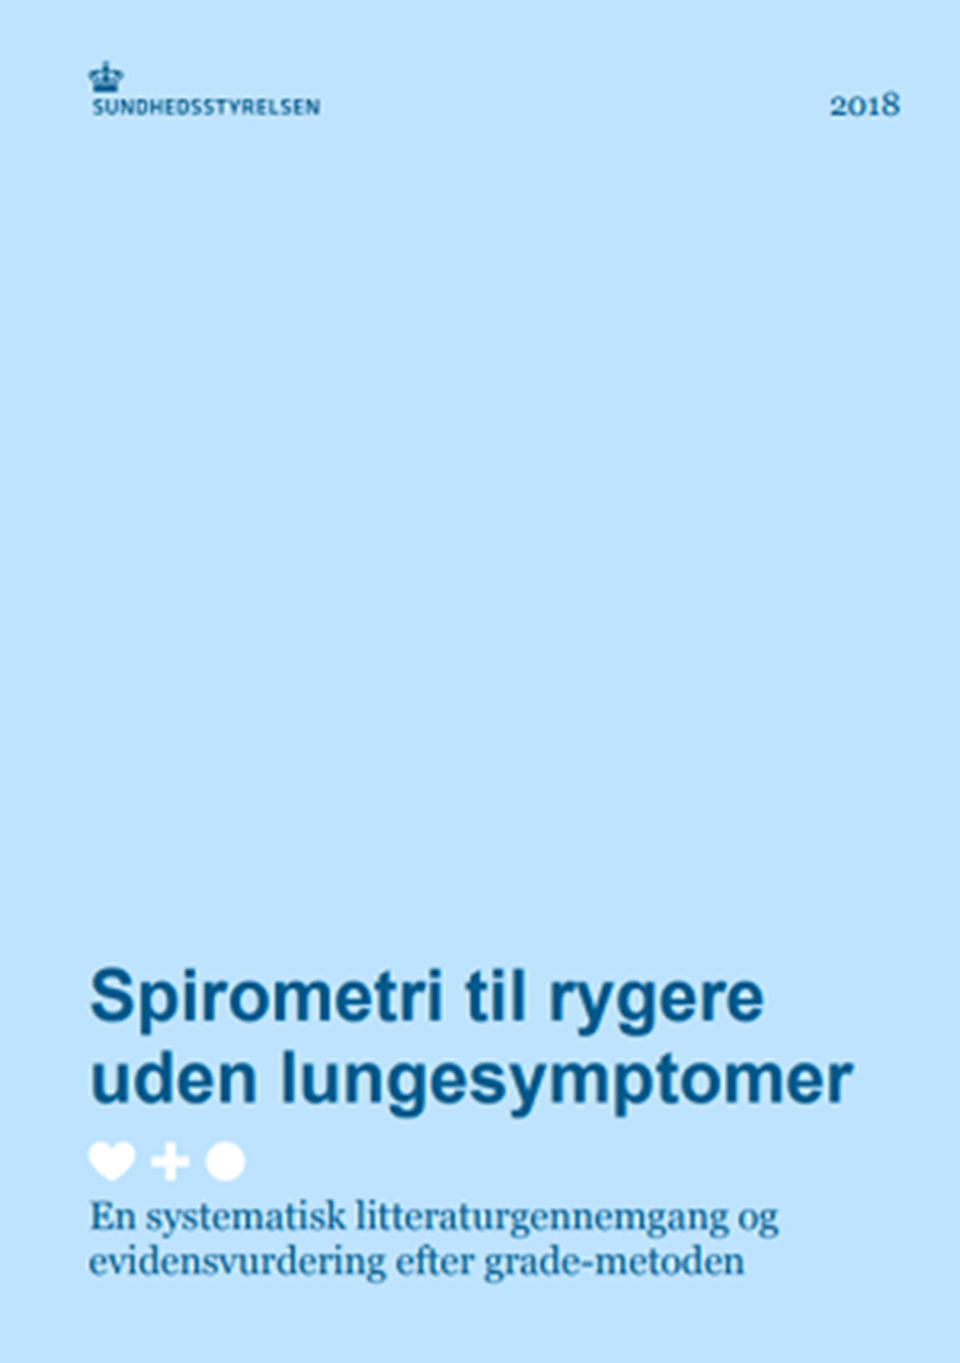 Spirometri til rygere uden lungesymptomer